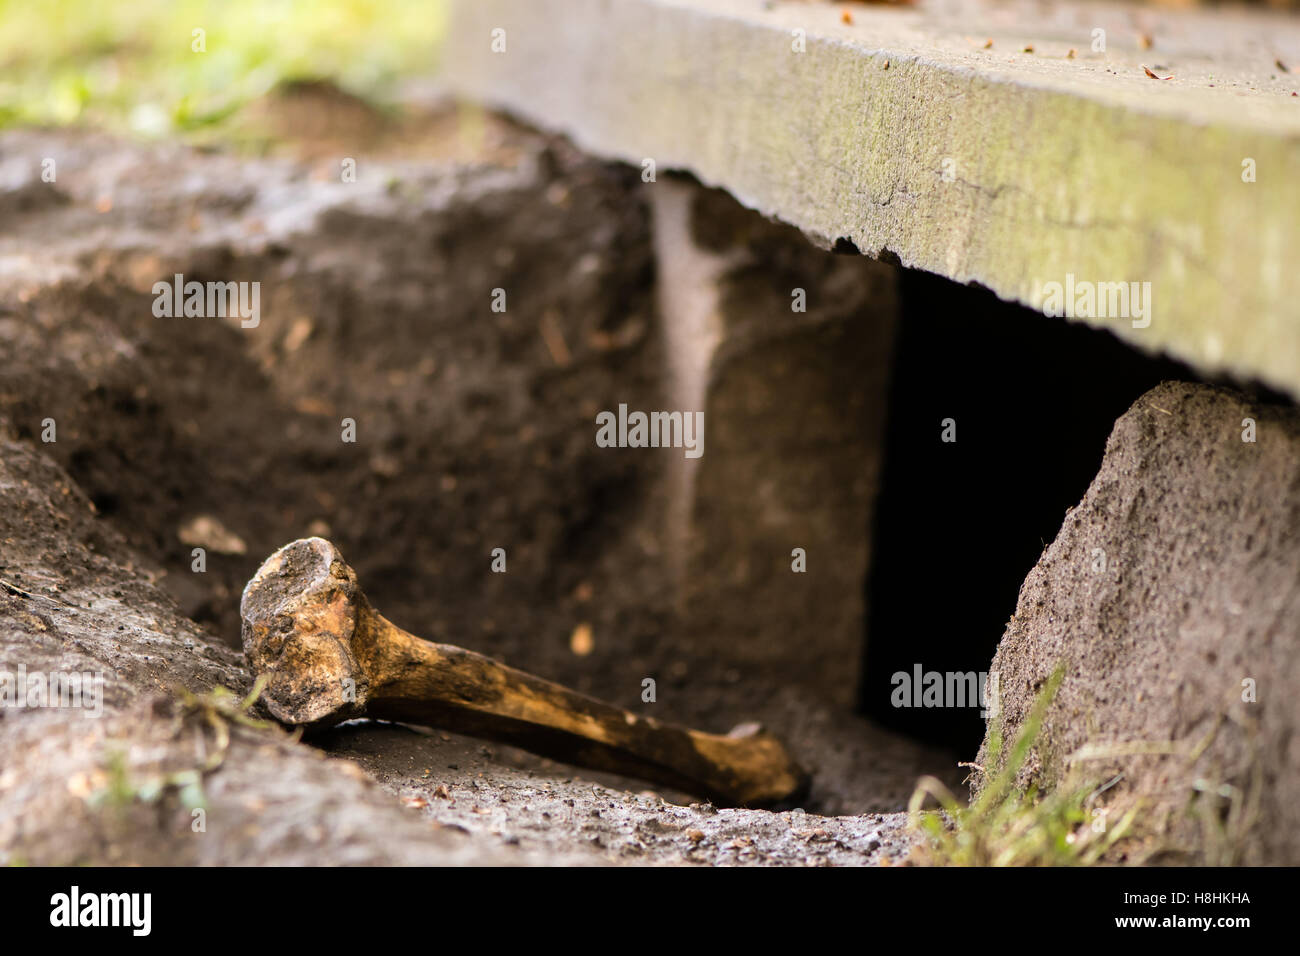 Les droits de l'os dans les cimetière, mis au jour par les blaireaux. Sett blaireau sous pierre tombale apporte à la surface du fémur, visible par le trou de l'animal Banque D'Images